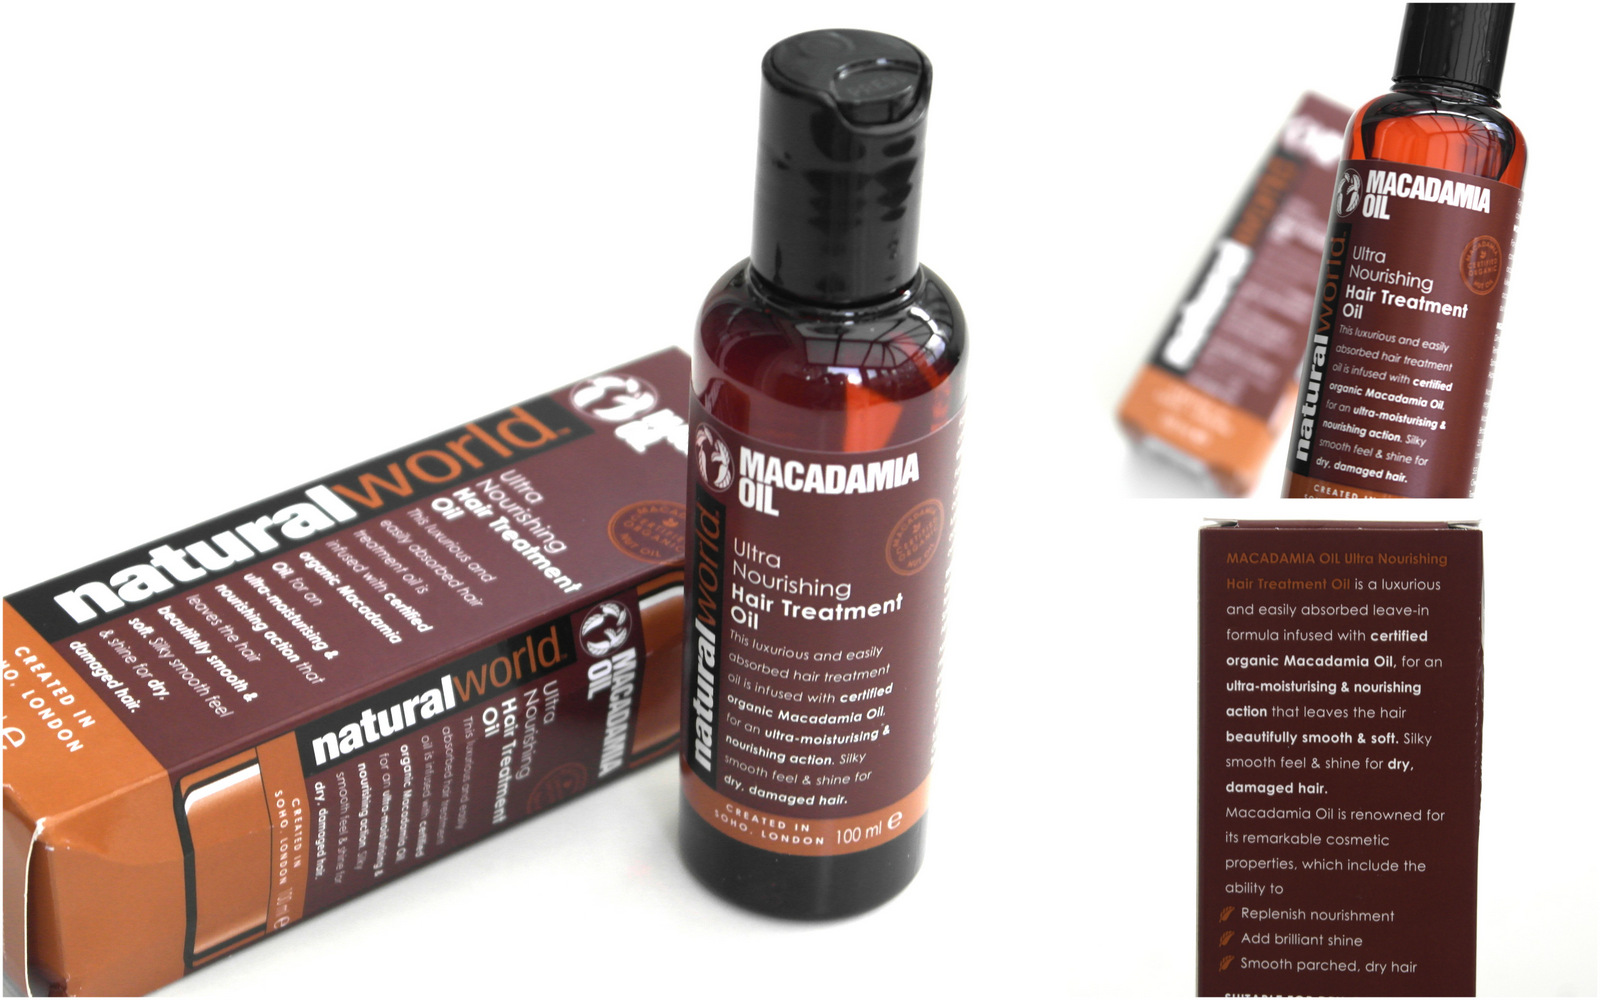 Natural World Macadamia Hair Treatment Oil